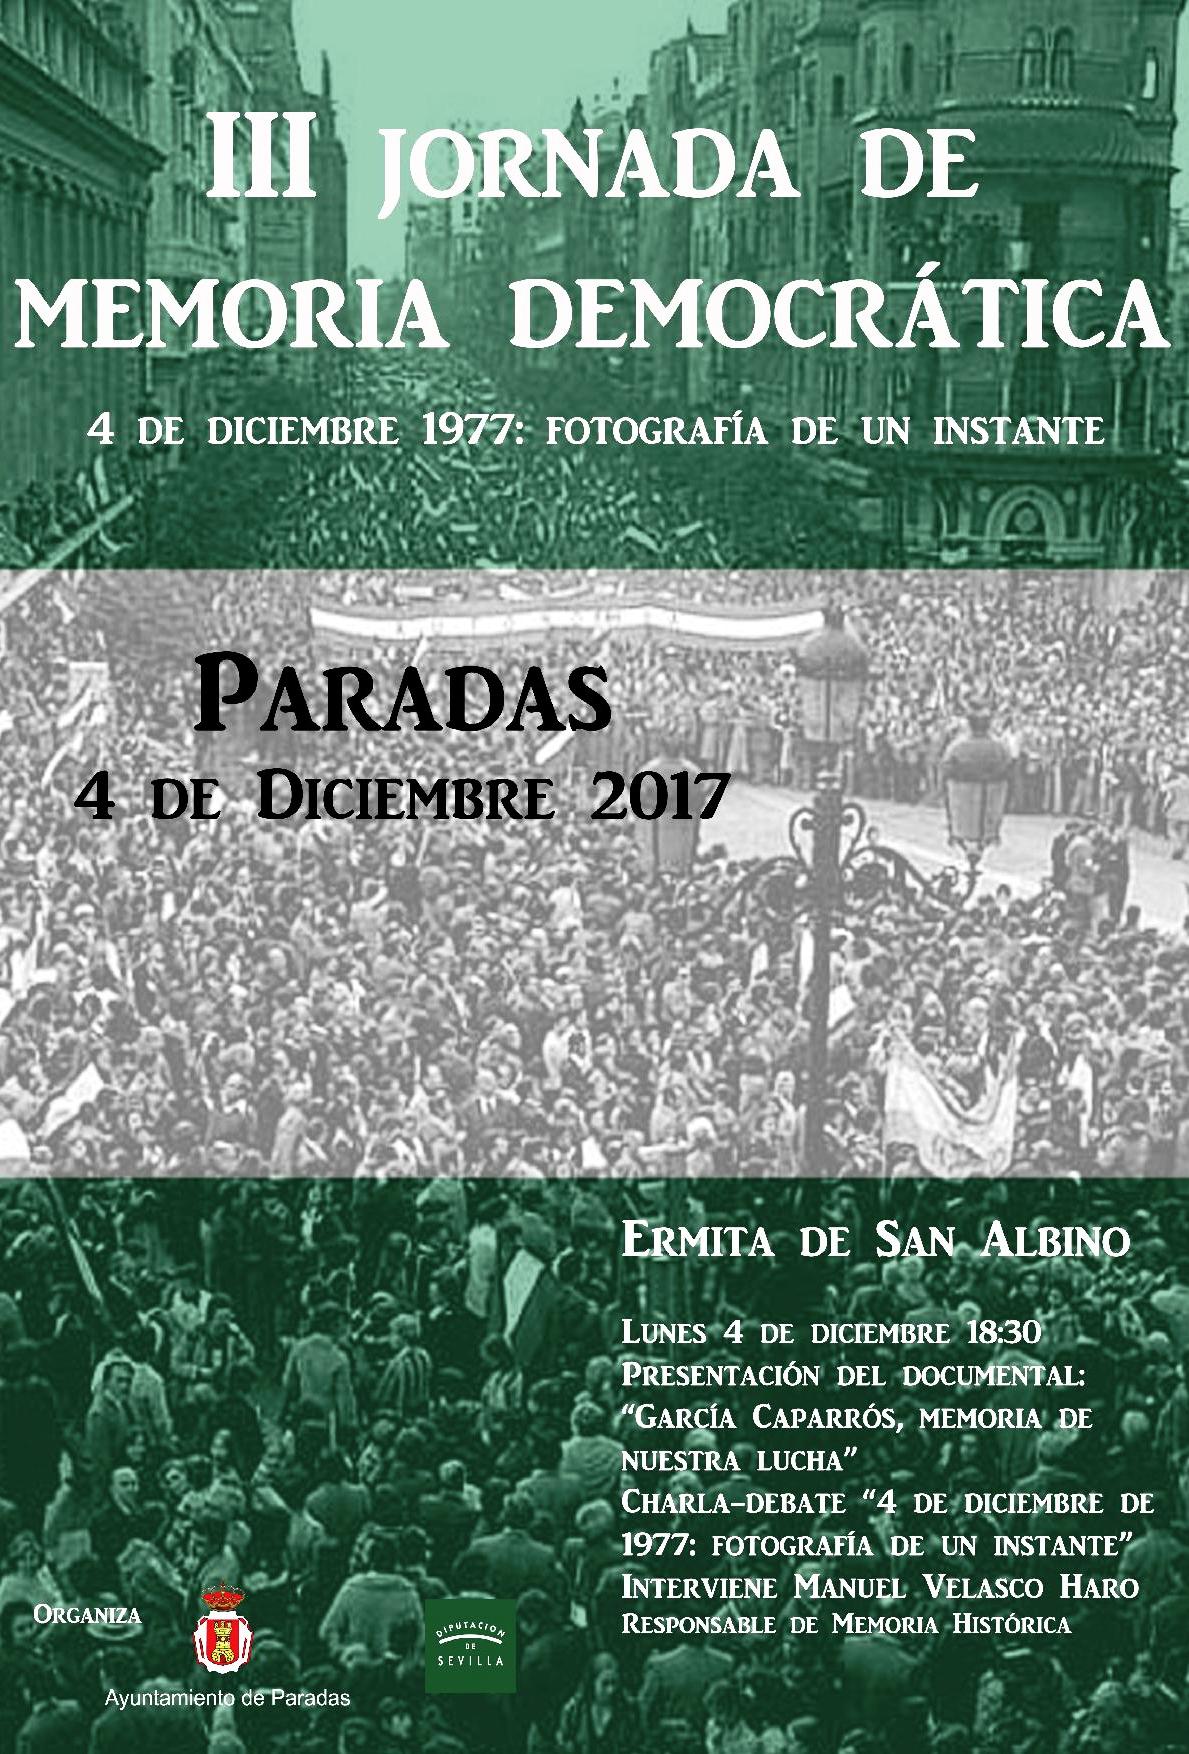 III Jornada de Memoria Democratica